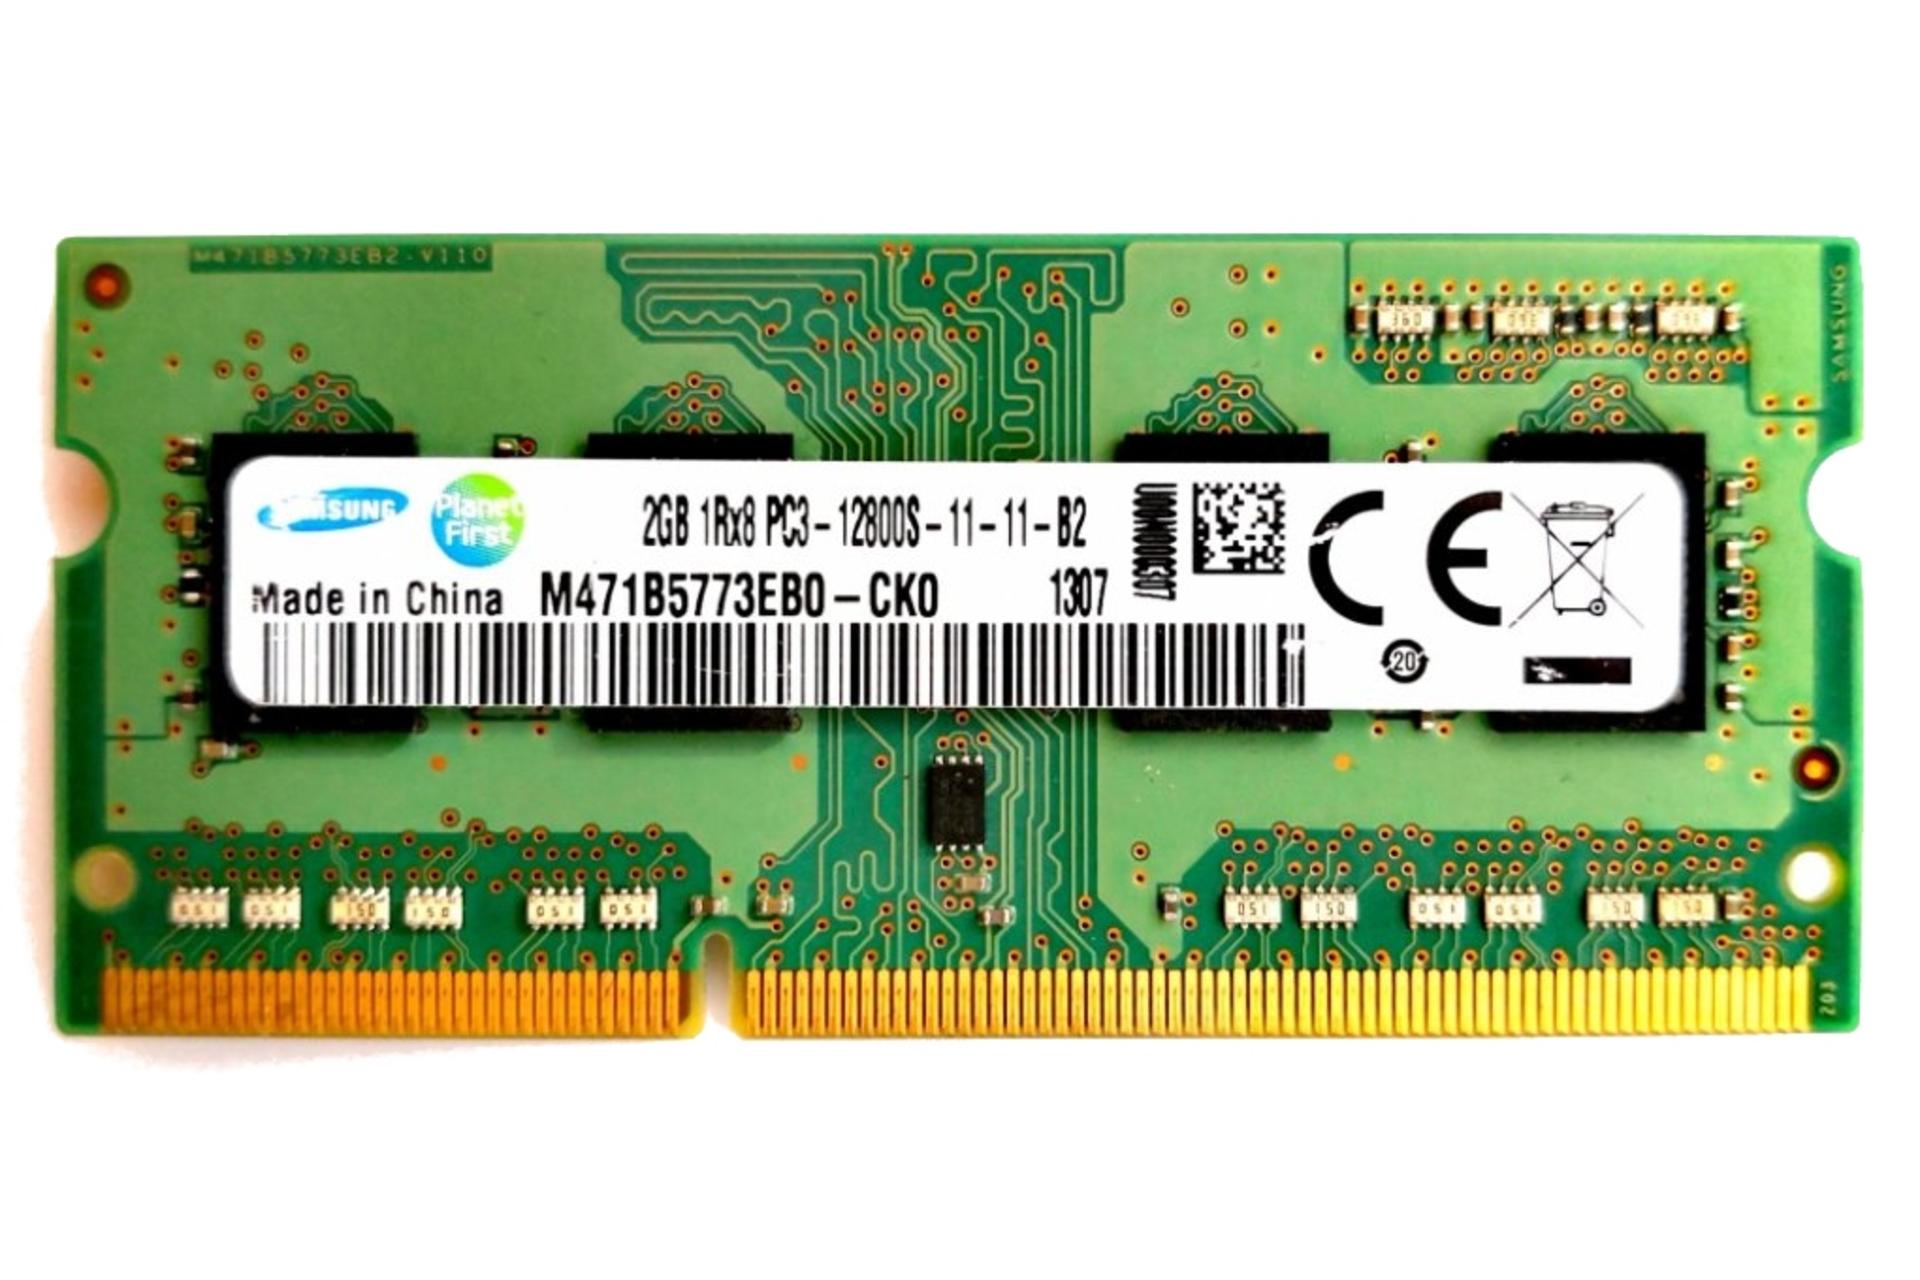 حافظه رم سامسونگ M471B5773EB0-CK0 ظرفیت 2 گیگابایت / Samsung M471B5773EB0-CK0 2GB DDR3-1600 CL11